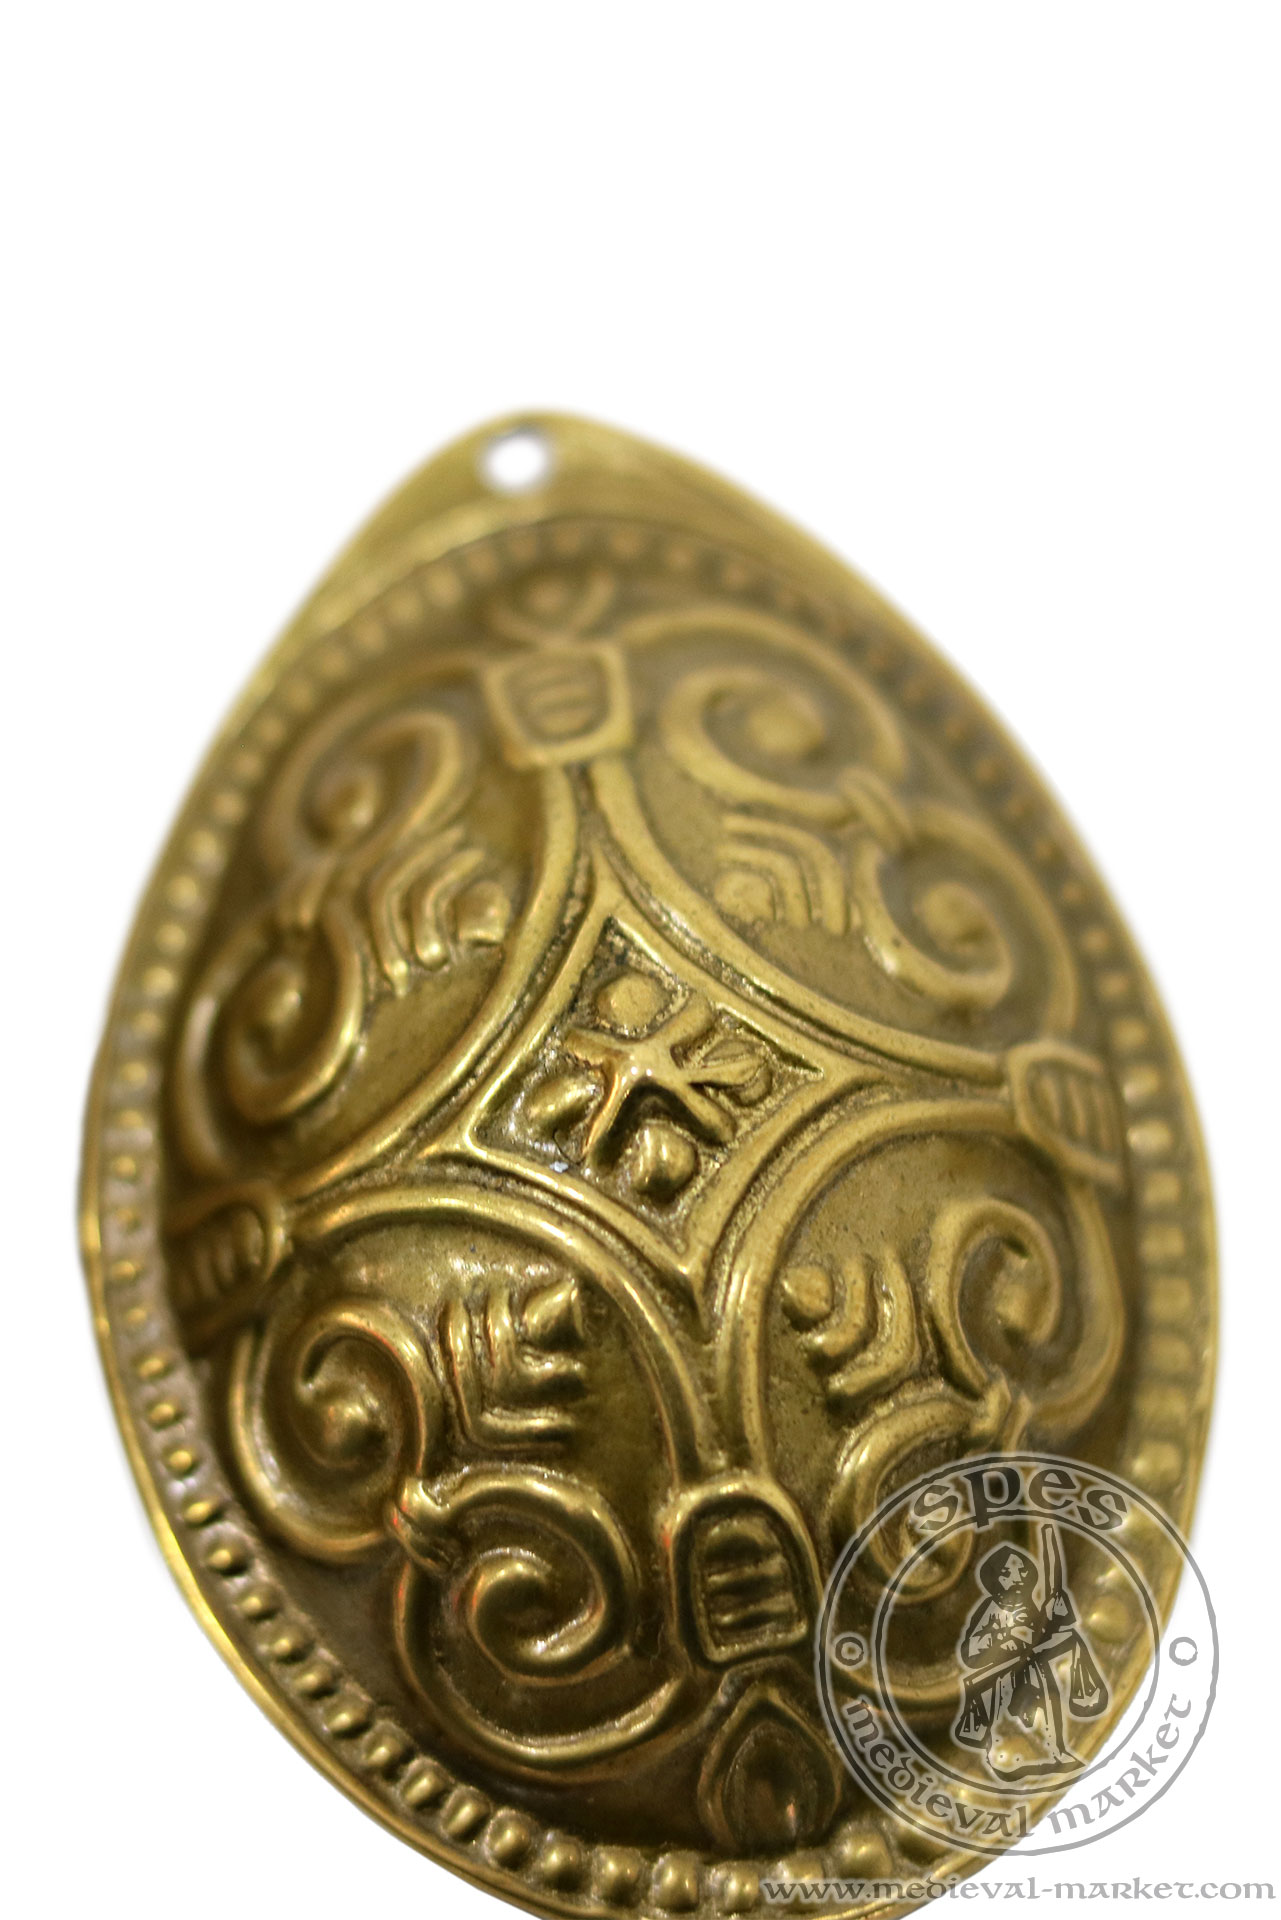 Viking oval brooch. MEDIEVAL MARKET - SPES